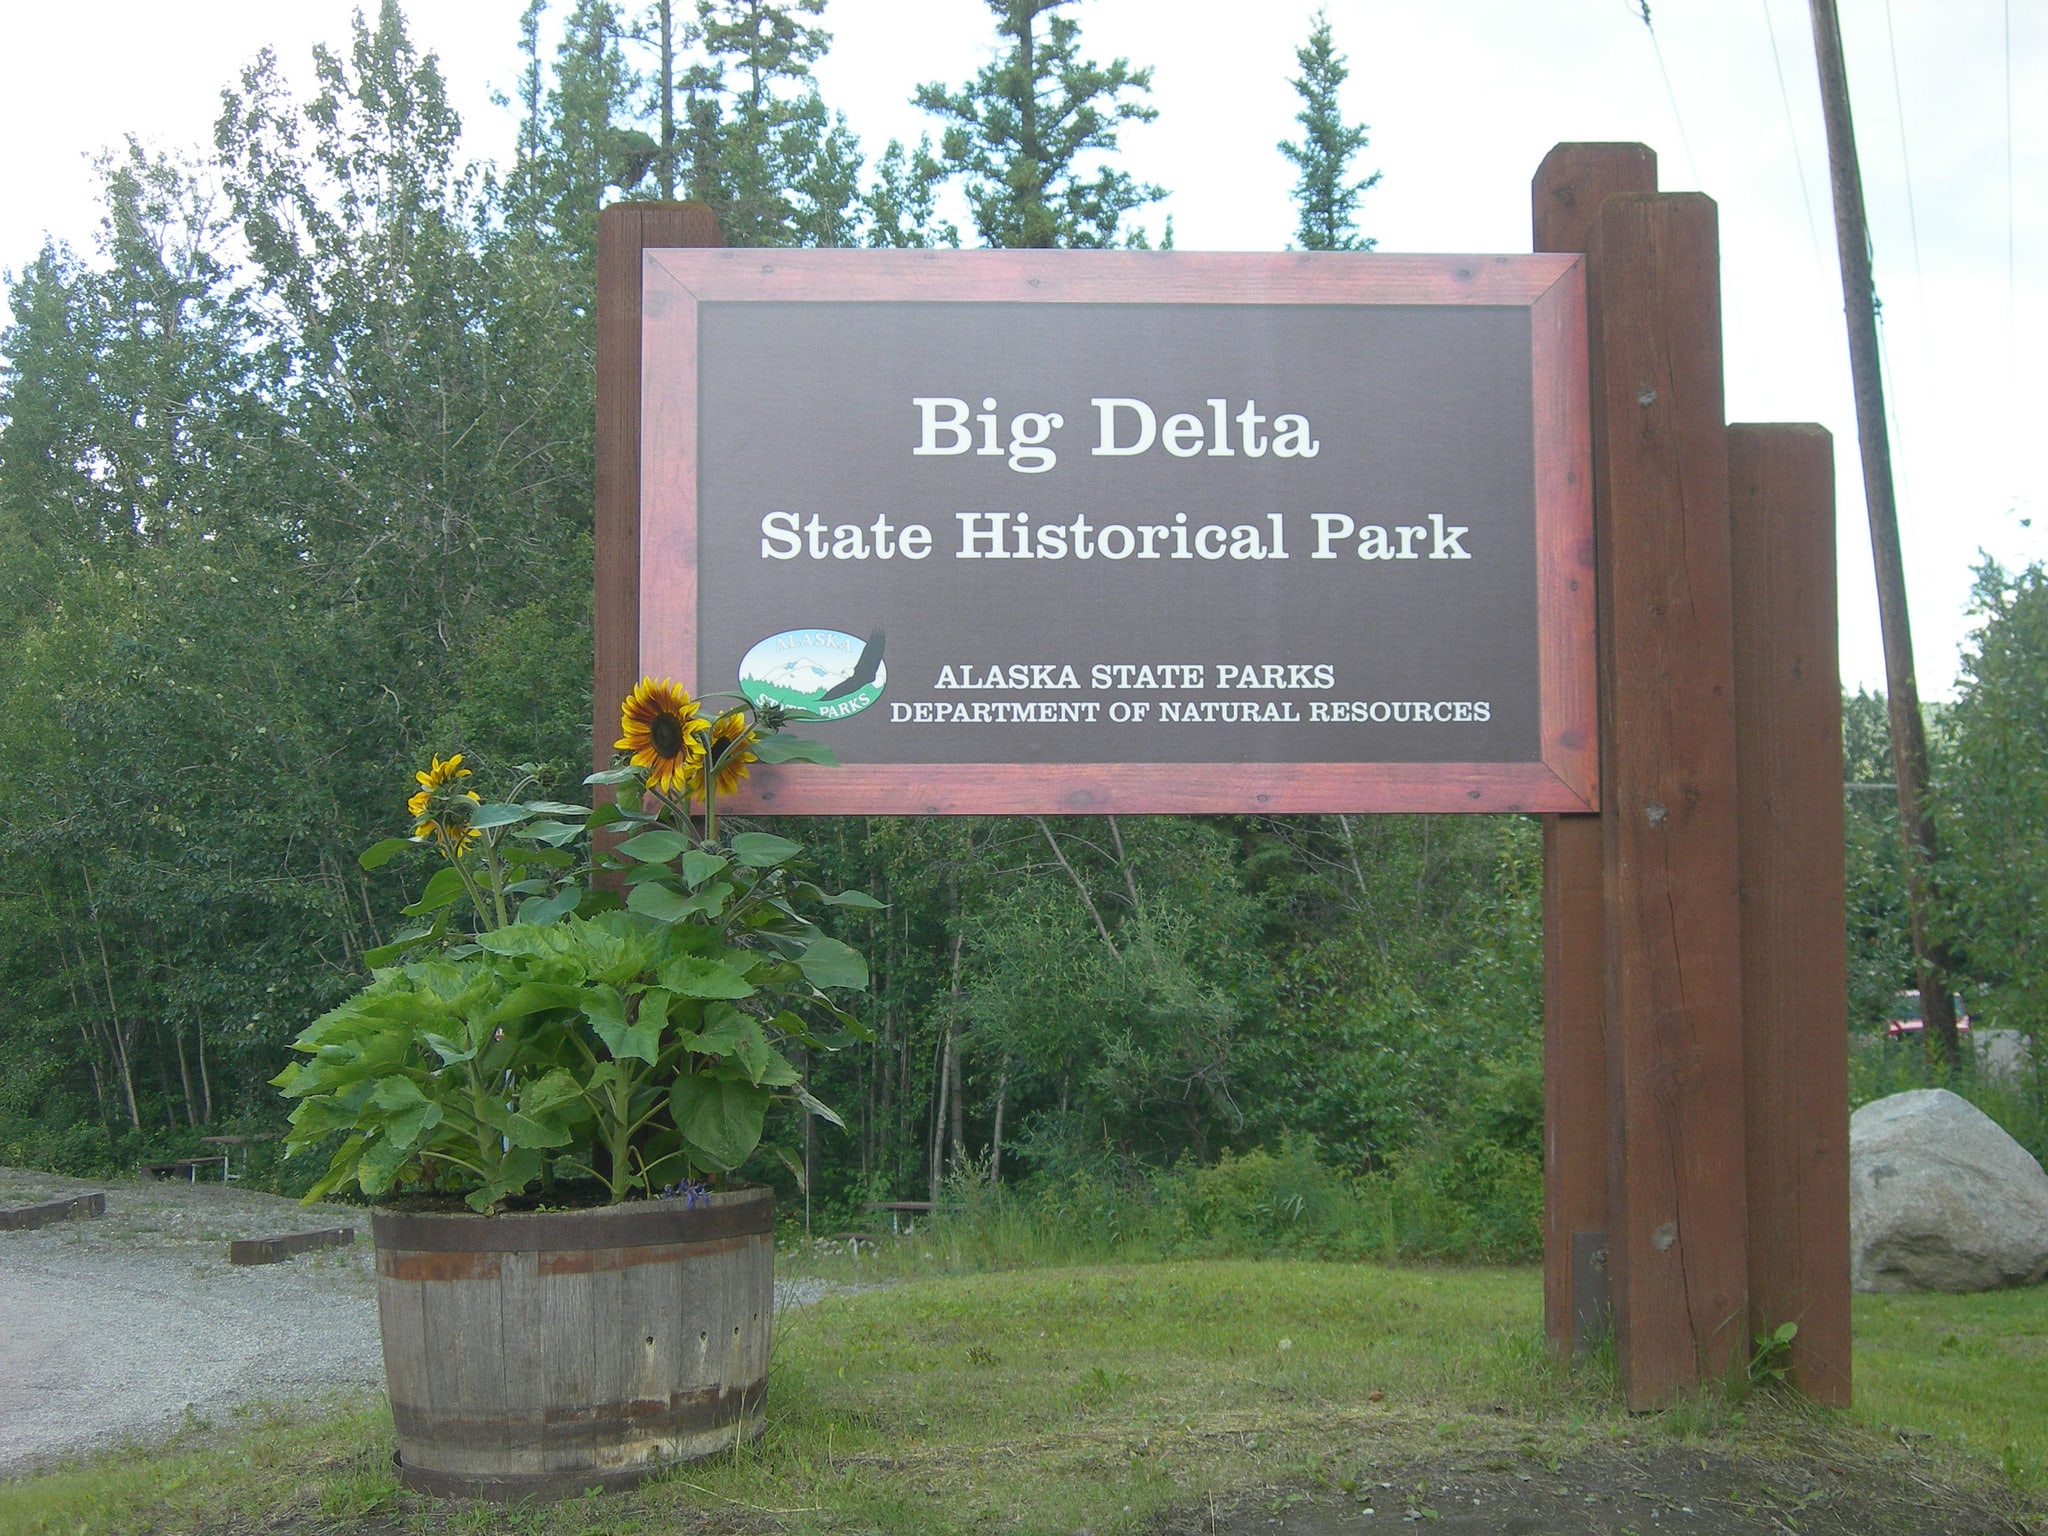 Big Delta State Historical Park